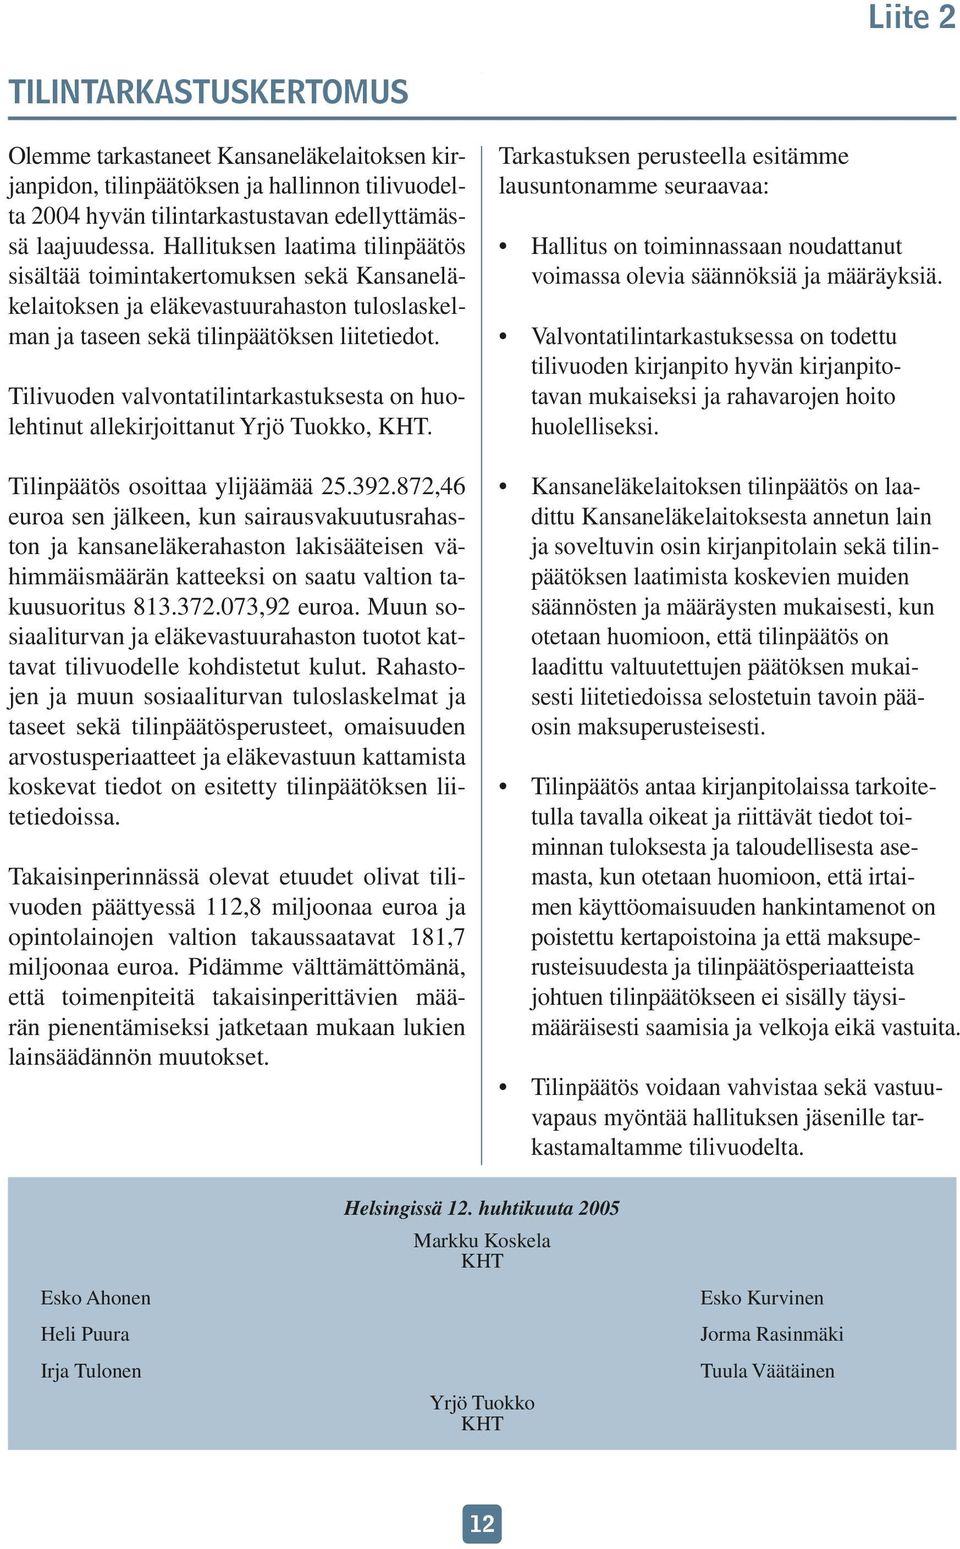 Tilivuoden valvontatilintarkastuksesta on huolehtinut allekirjoittanut Yrjö Tuokko, KHT. Tilinpäätös osoittaa ylijäämää 25.392.